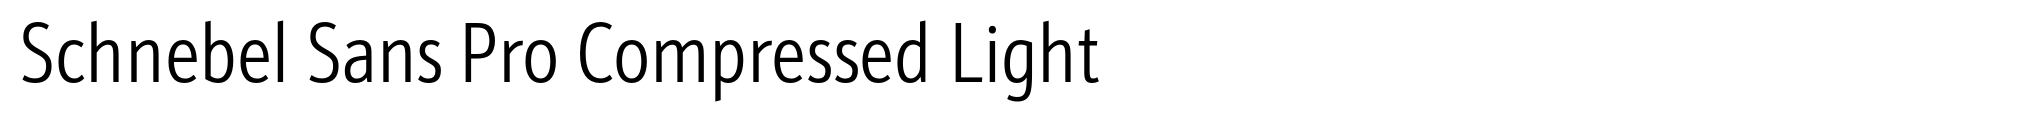 Schnebel Sans Pro Compressed Light image